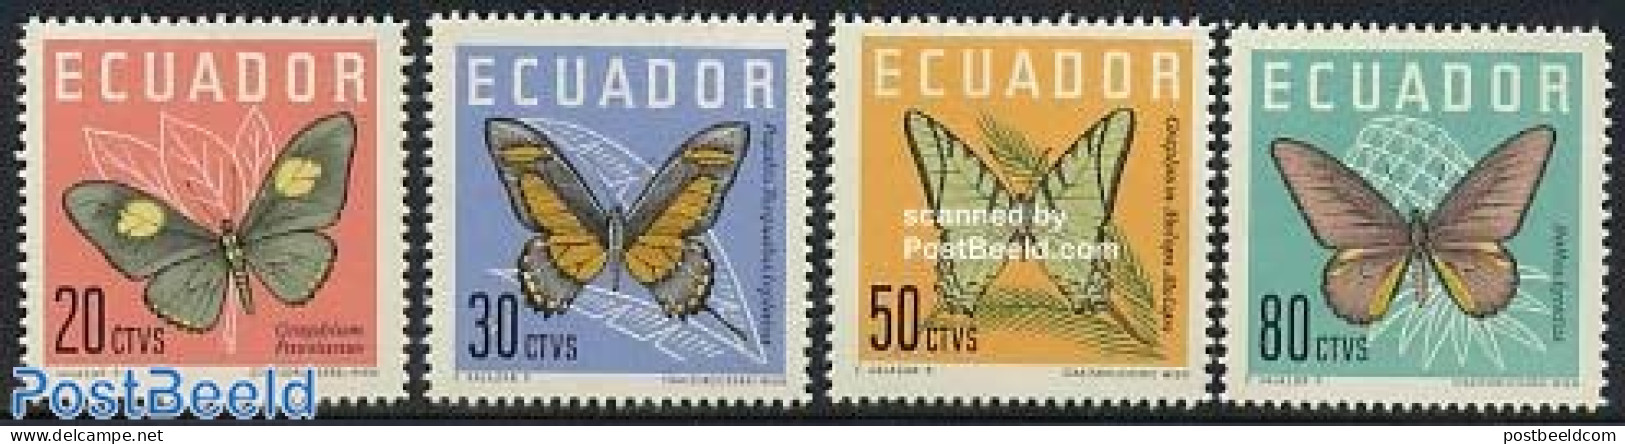 Ecuador 1961 Butterflies 4v, Mint NH, Nature - Butterflies - Equateur